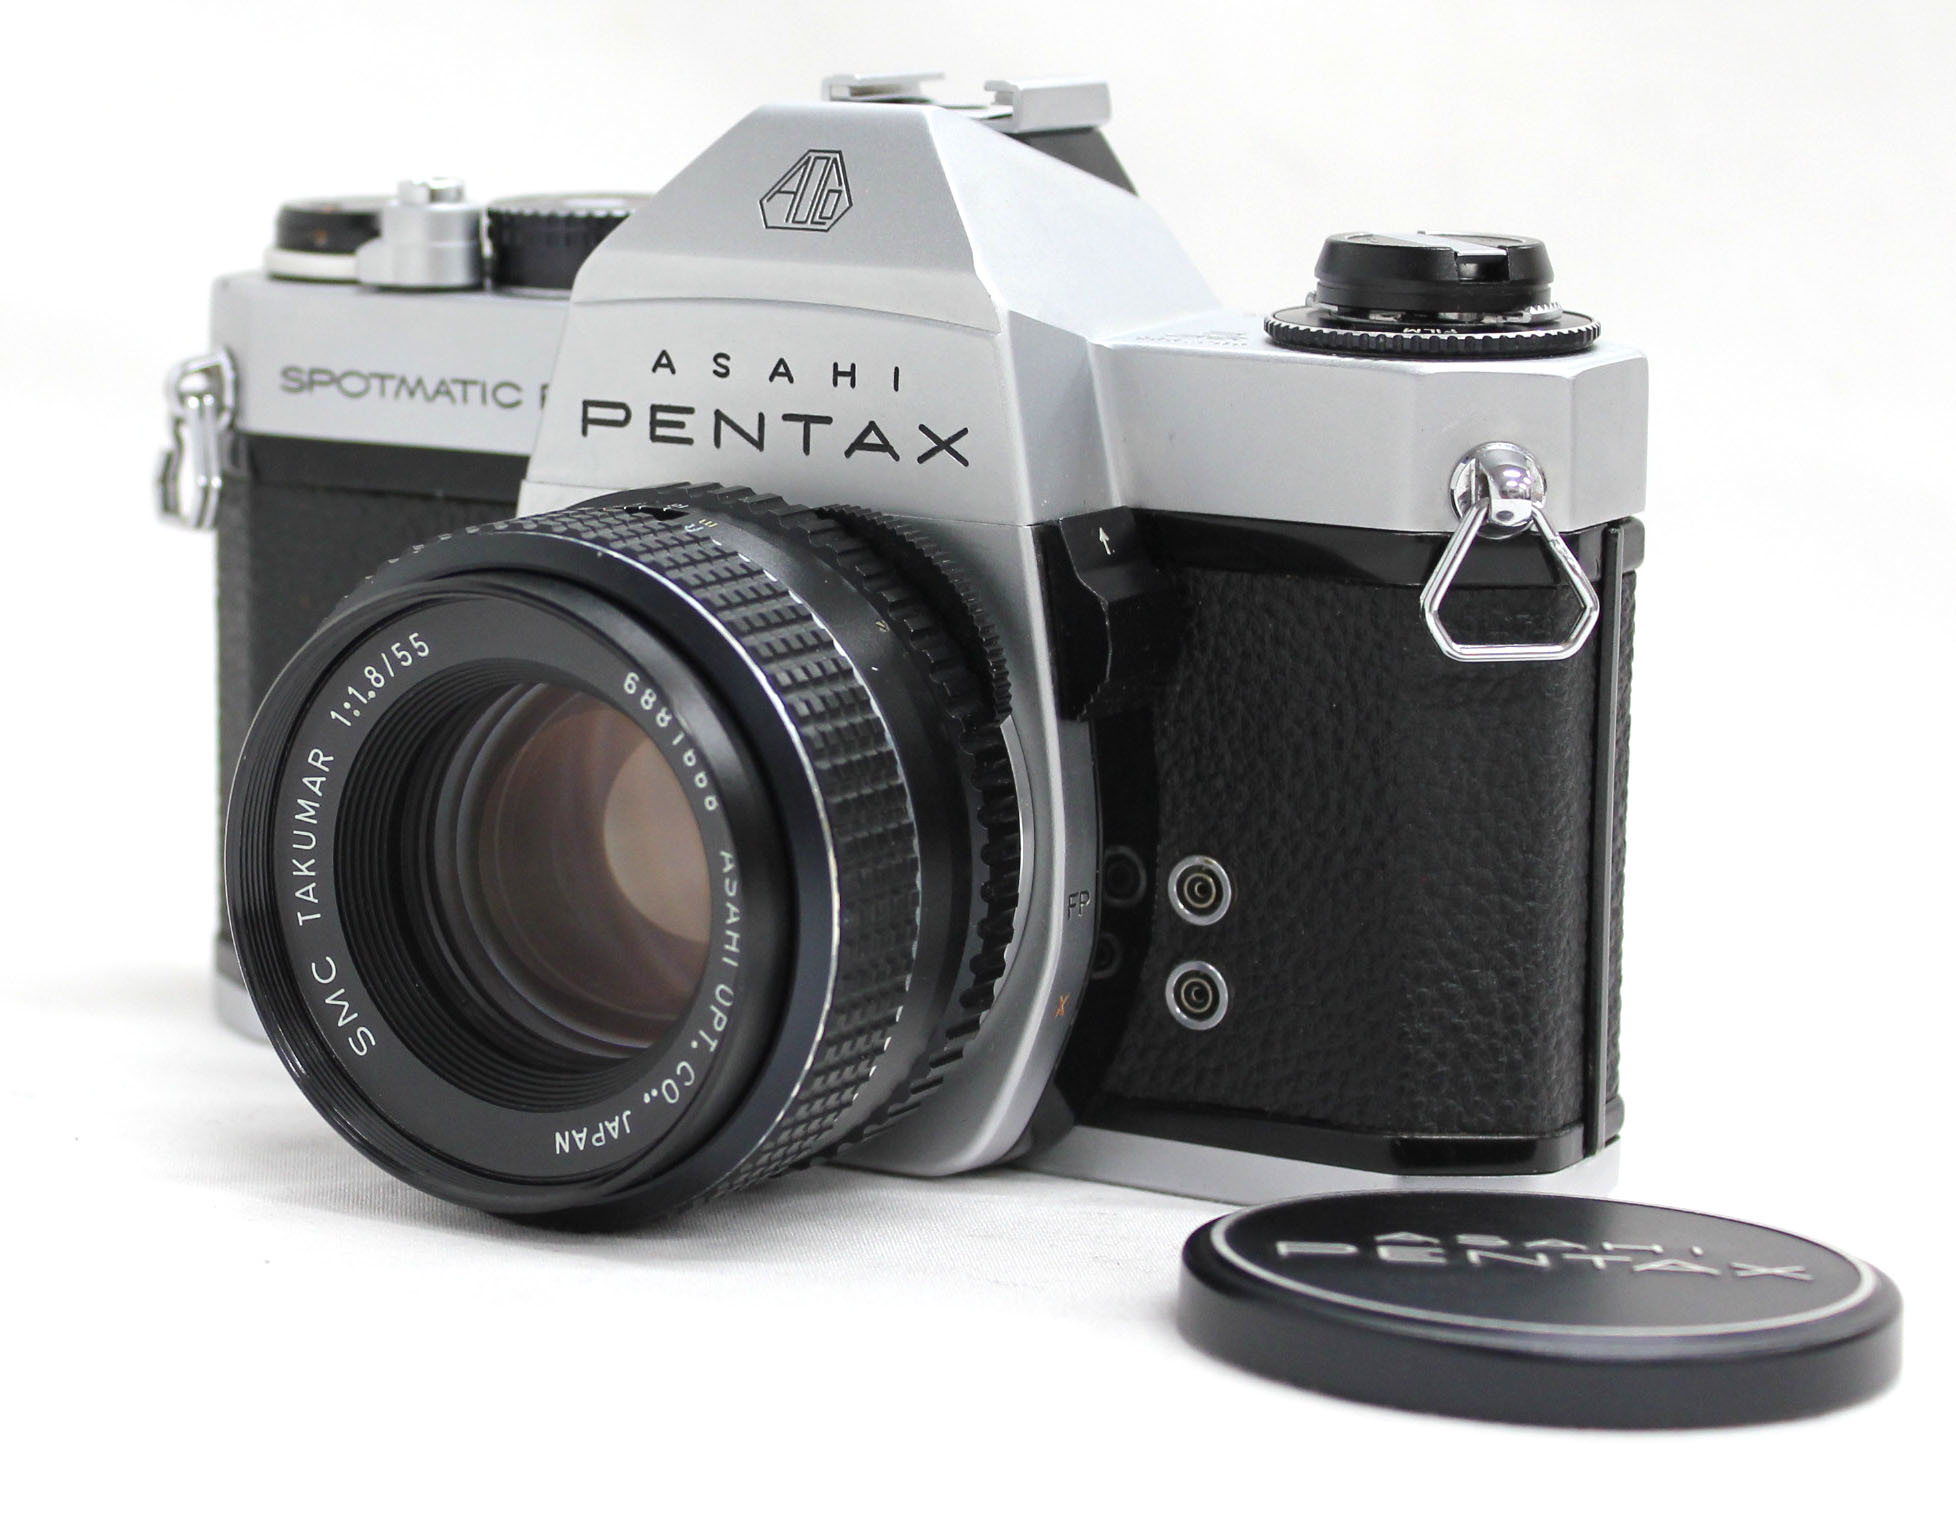 [Near Mint] Asahi Pentax Spotmatic F SPF 35mm SLR Camera w/ SMC Takumar 55mm F/1.8 Lens from Japan